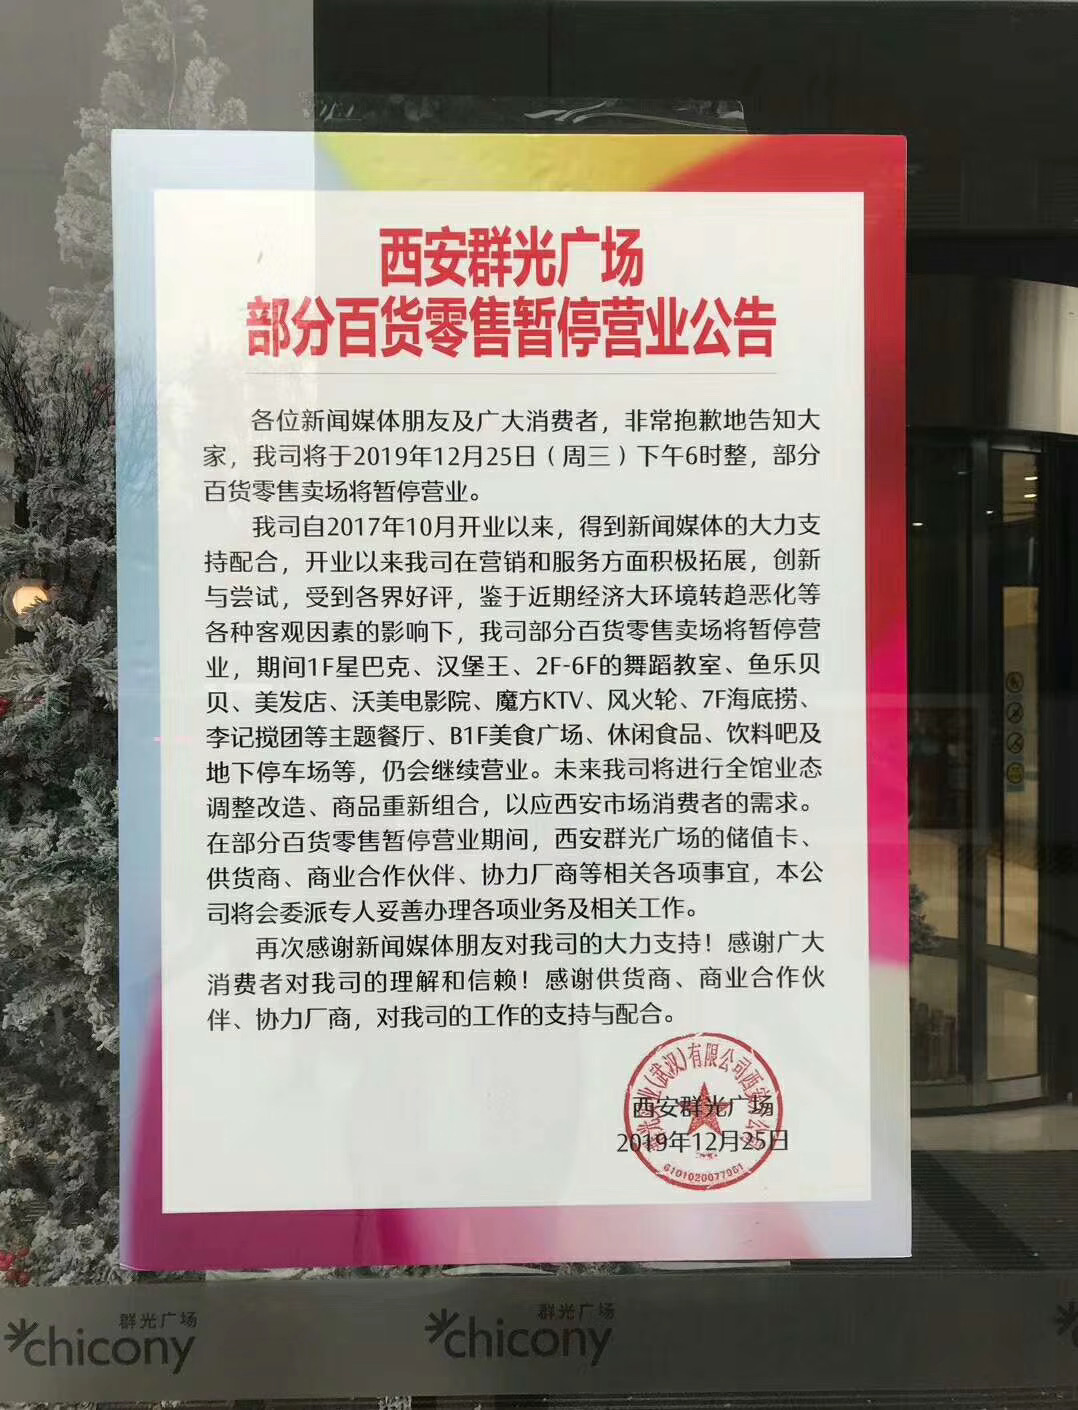 正式公告出炉 西安群光广场12月25日起部分百货业态暂停营业